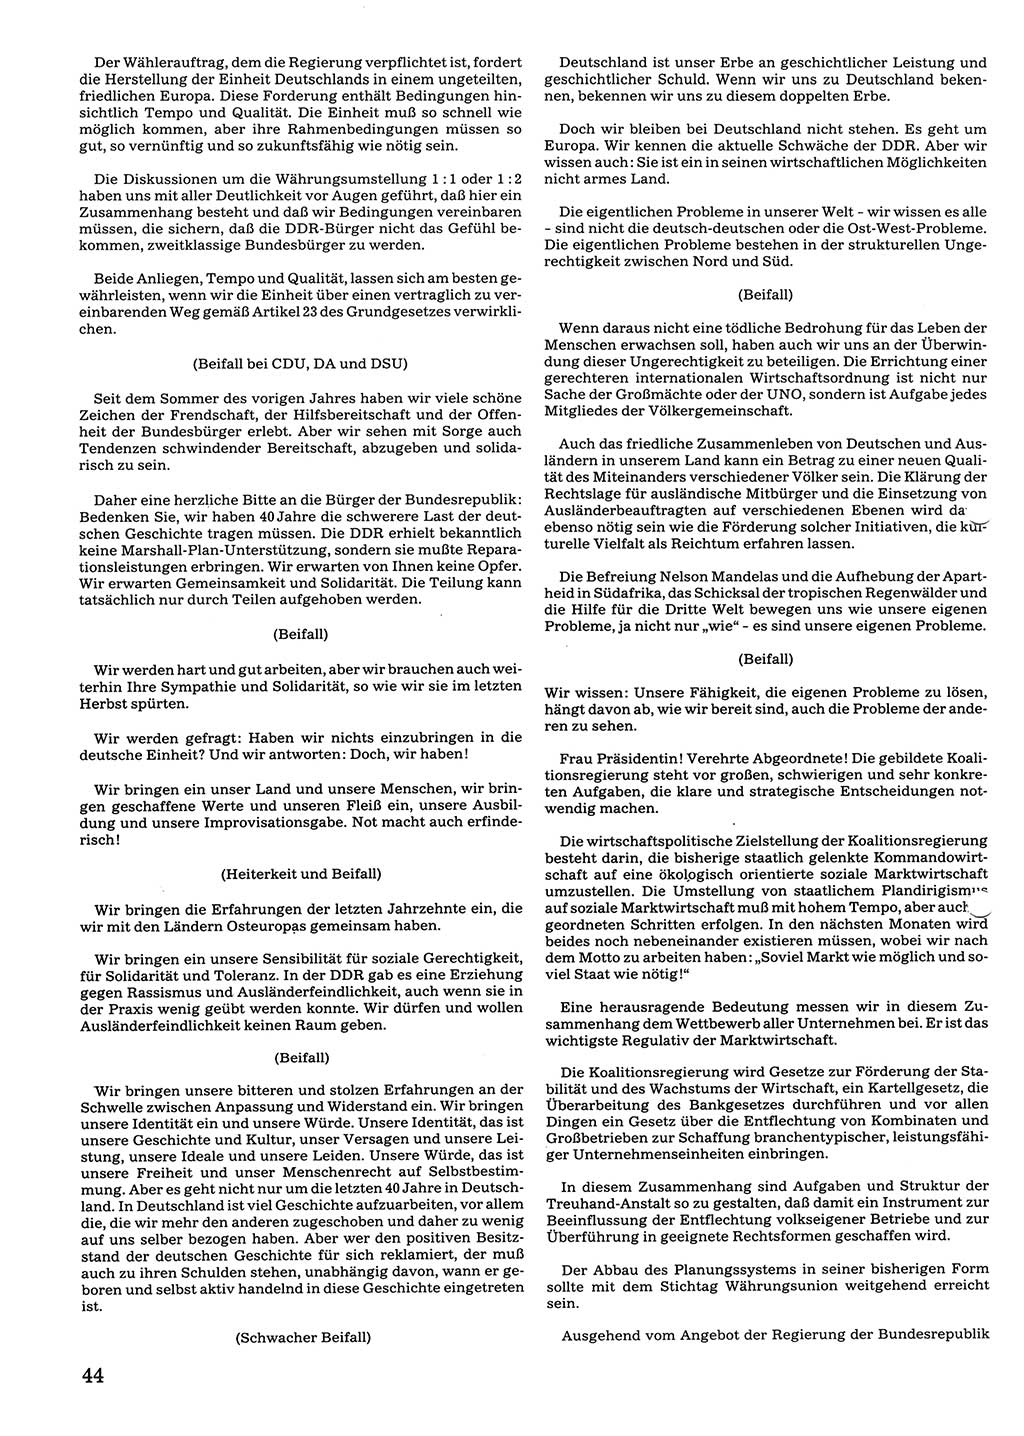 Tagungen der Volkskammer (VK) der Deutschen Demokratischen Republik (DDR), 10. Wahlperiode 1990, Seite 44 (VK. DDR 10. WP. 1990, Prot. Tg. 1-38, 5.4.-2.10.1990, S. 44)